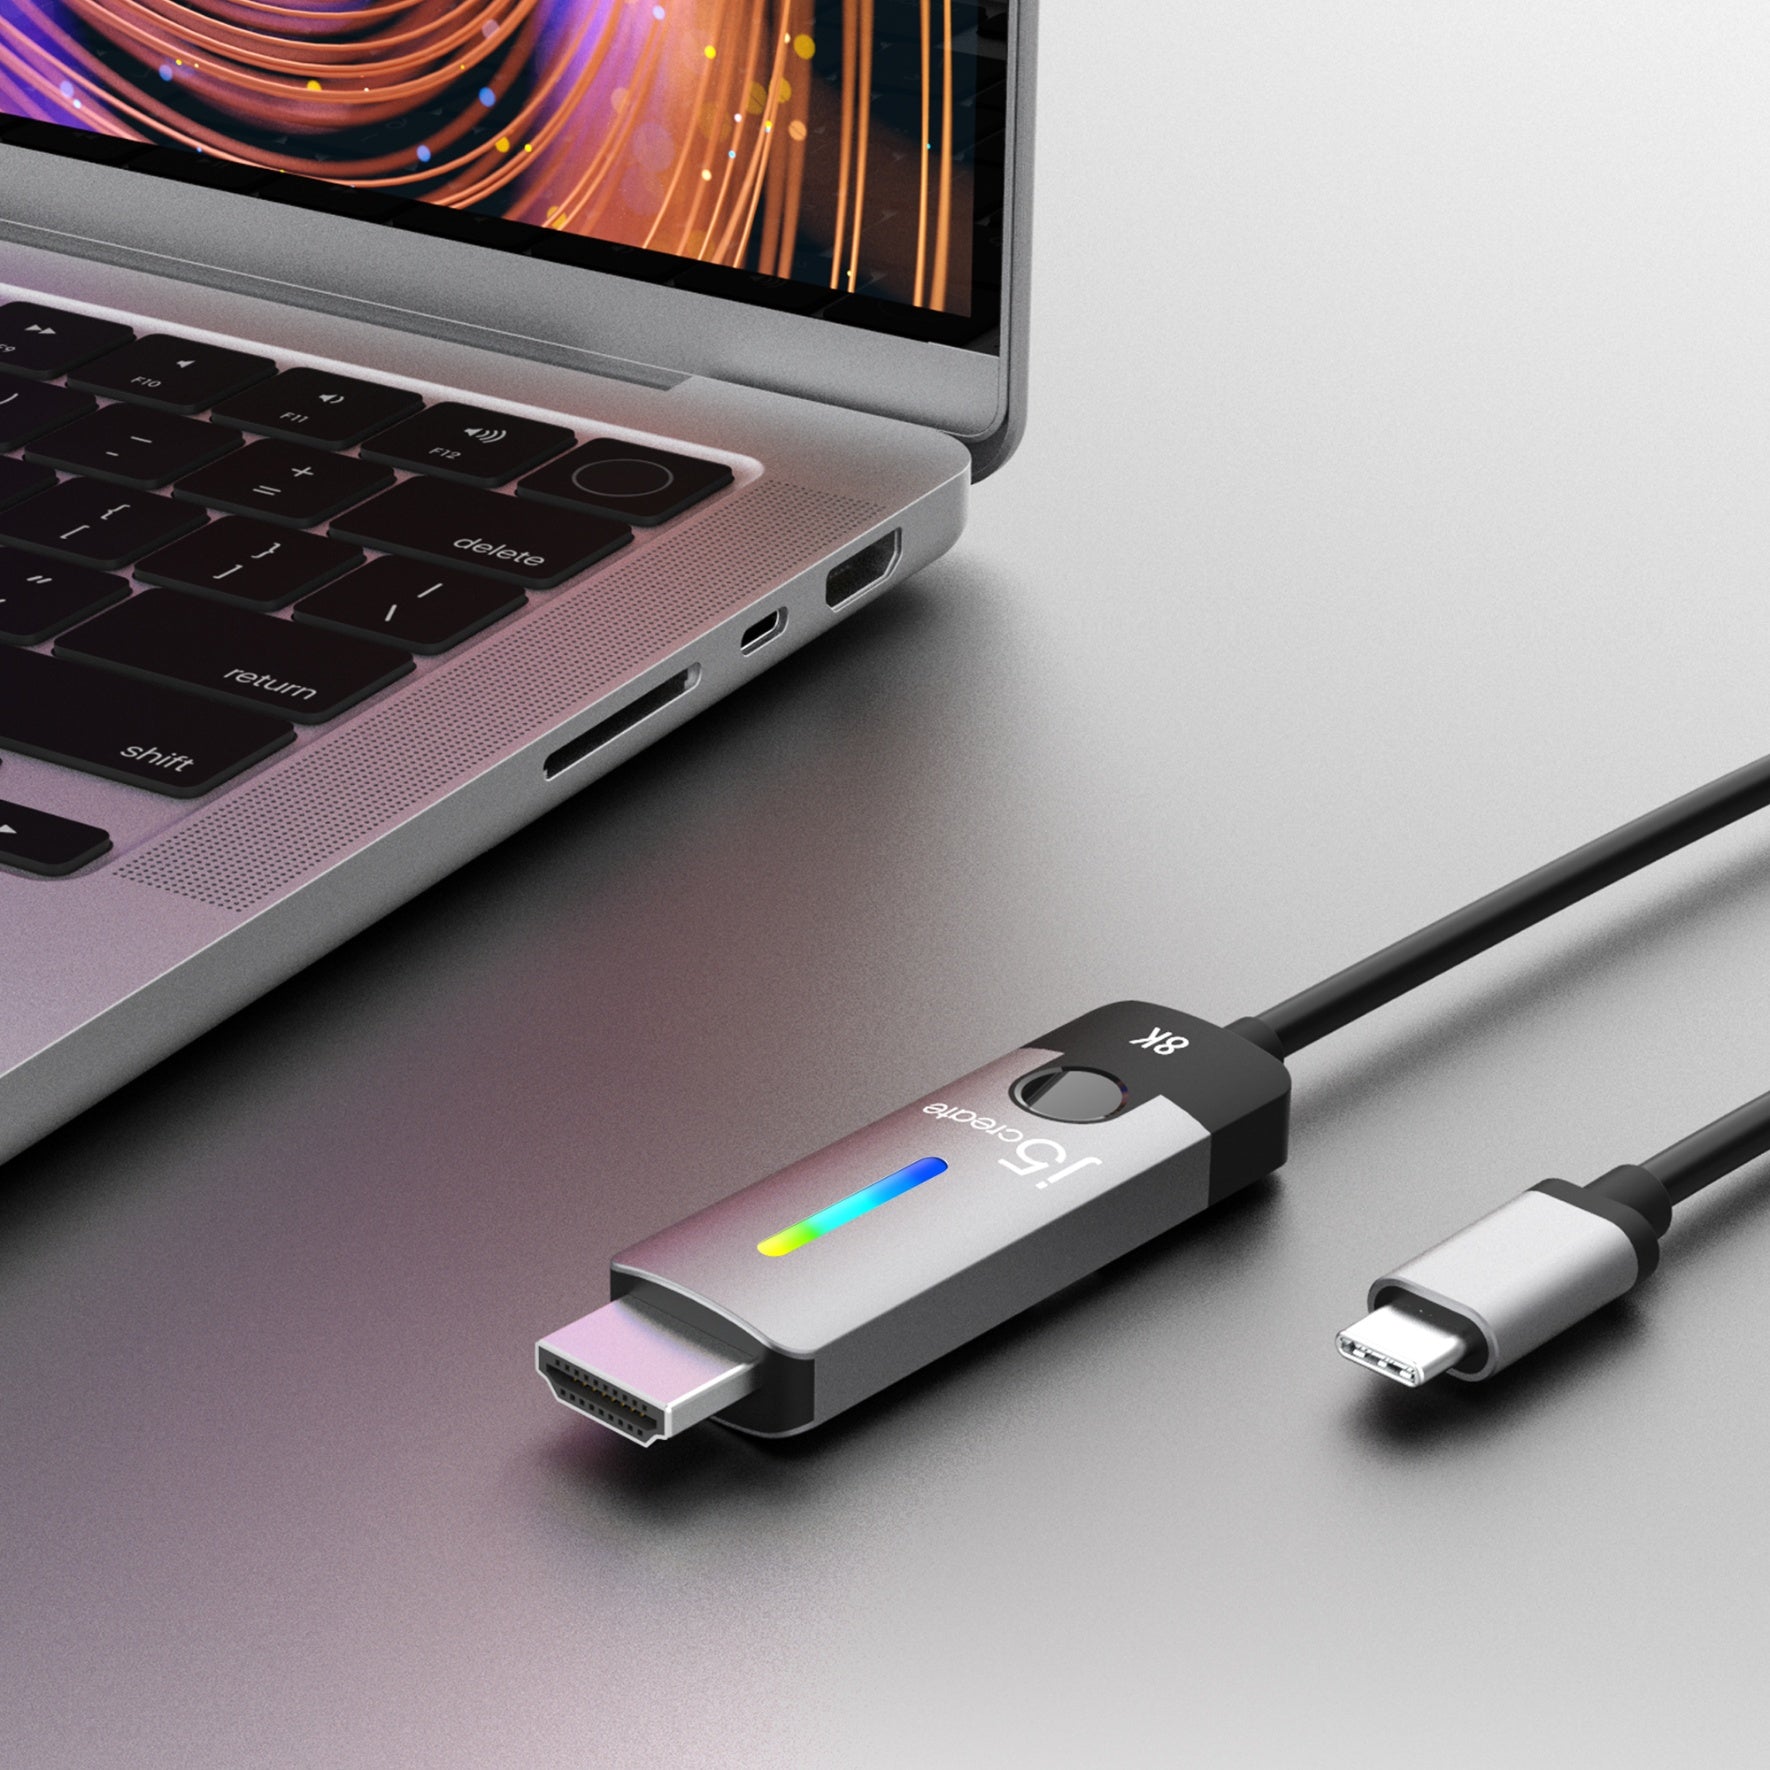 Krønike Høj eksponering George Eliot USB-C® to HDMI™ 2.1 8K Cable – j5create